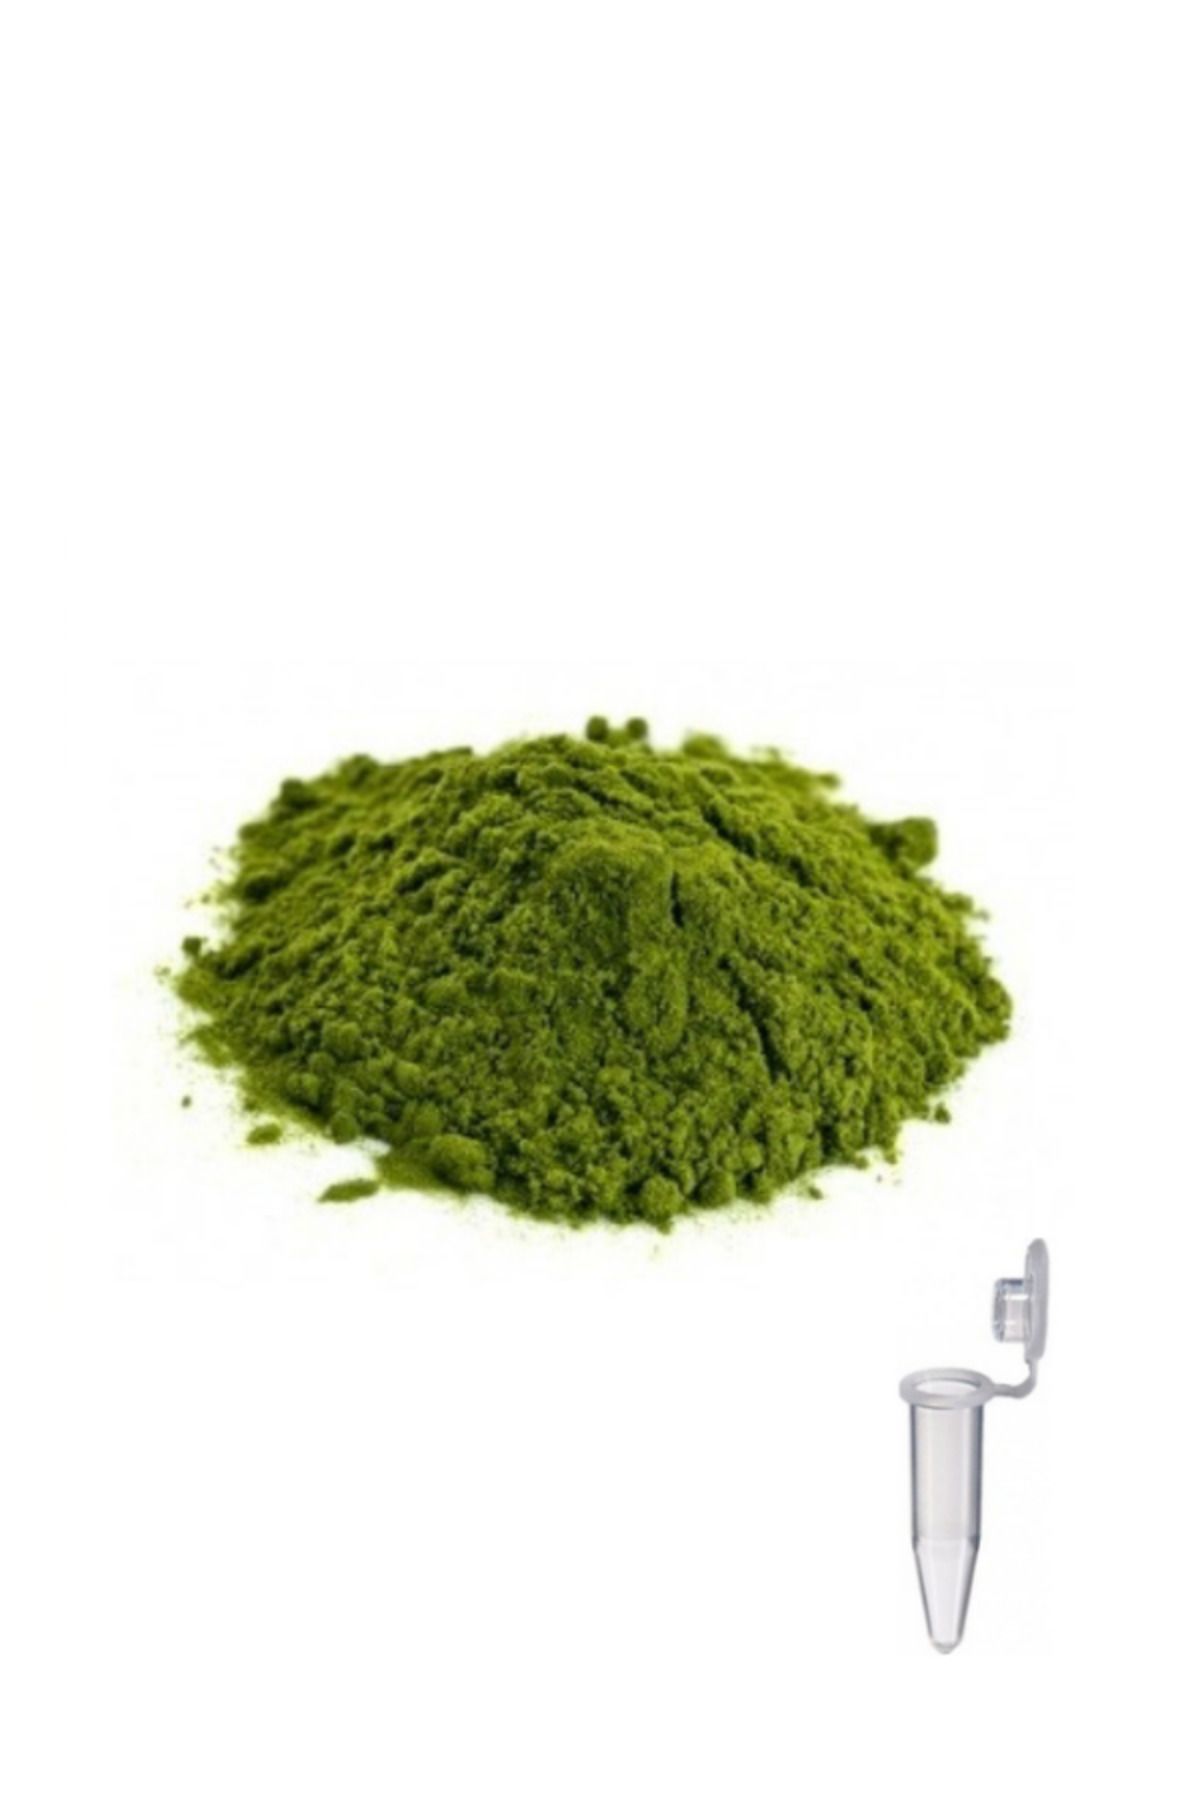 Solman Yeşil Mum Boyası Pigment 1,5ml Tüp İçerisinde Mum Yapma Malzemeleri Mum Yapımı Renklendirme